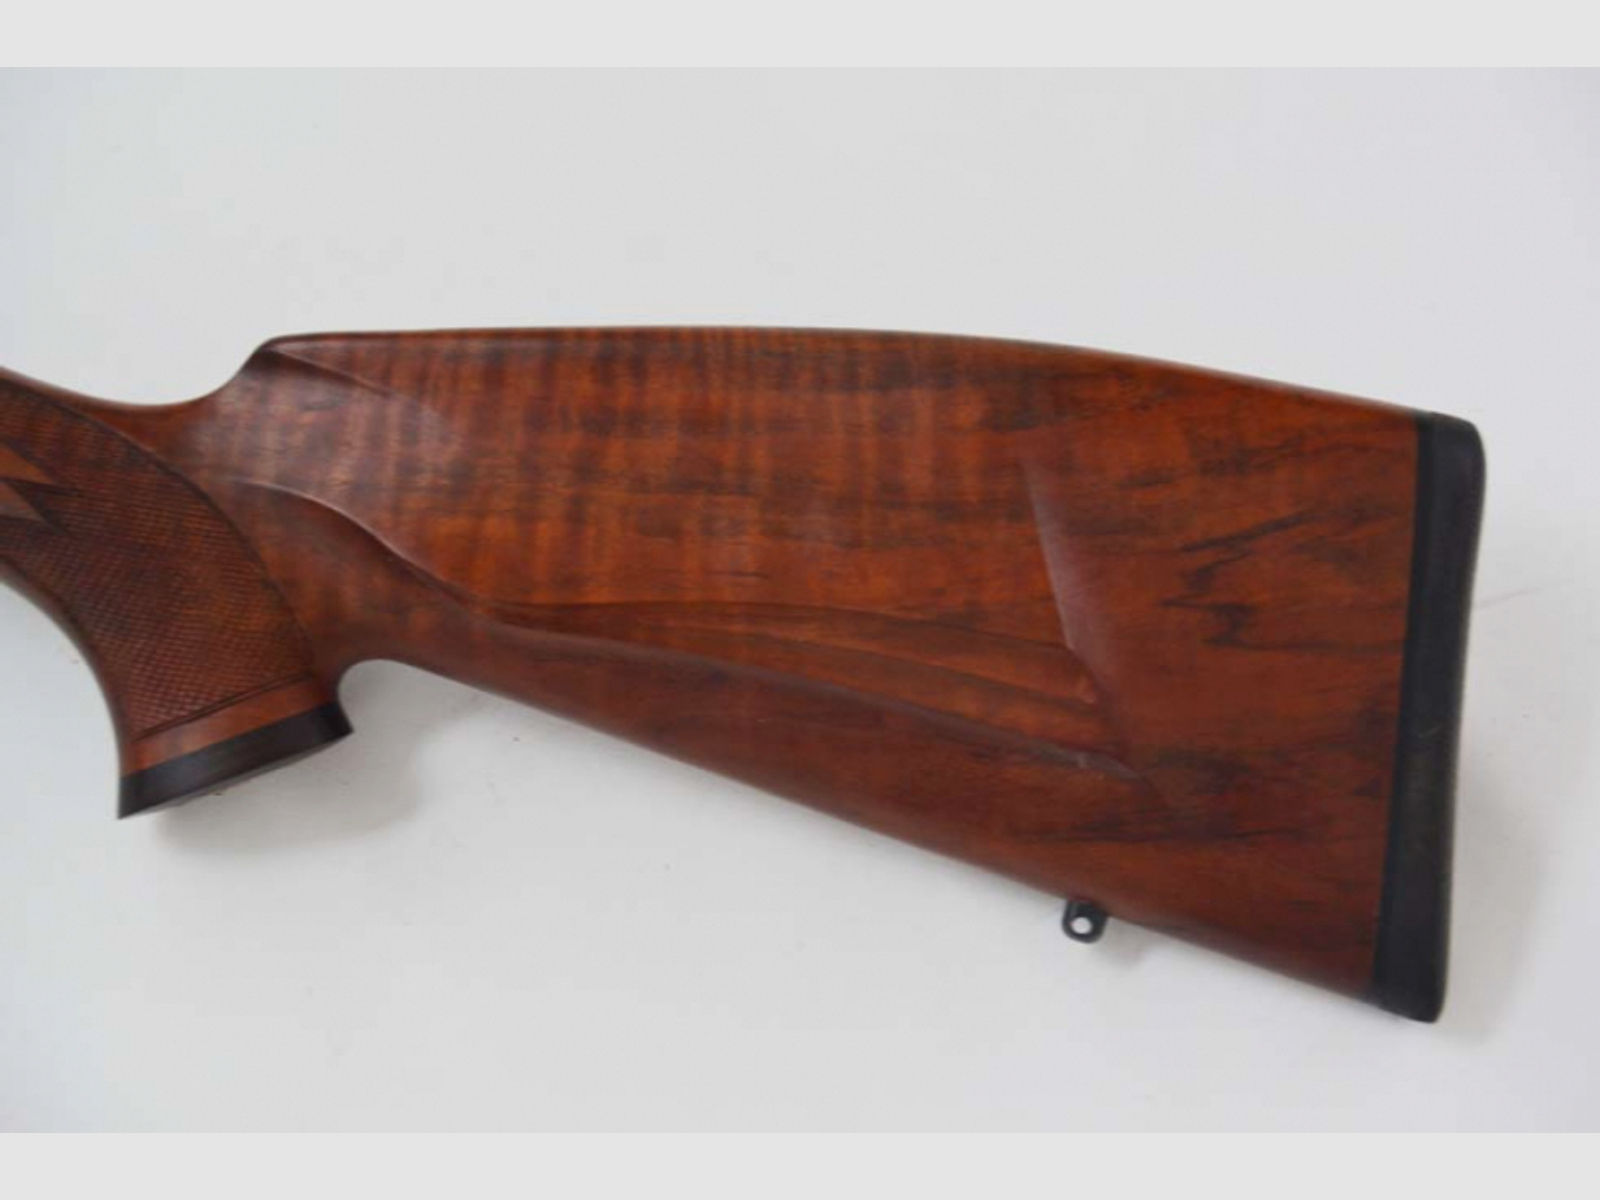 Repetierbüchse Sako 85L, Kaliber .300Winchester Magnum, mit Dentler Basisschiene, 2020